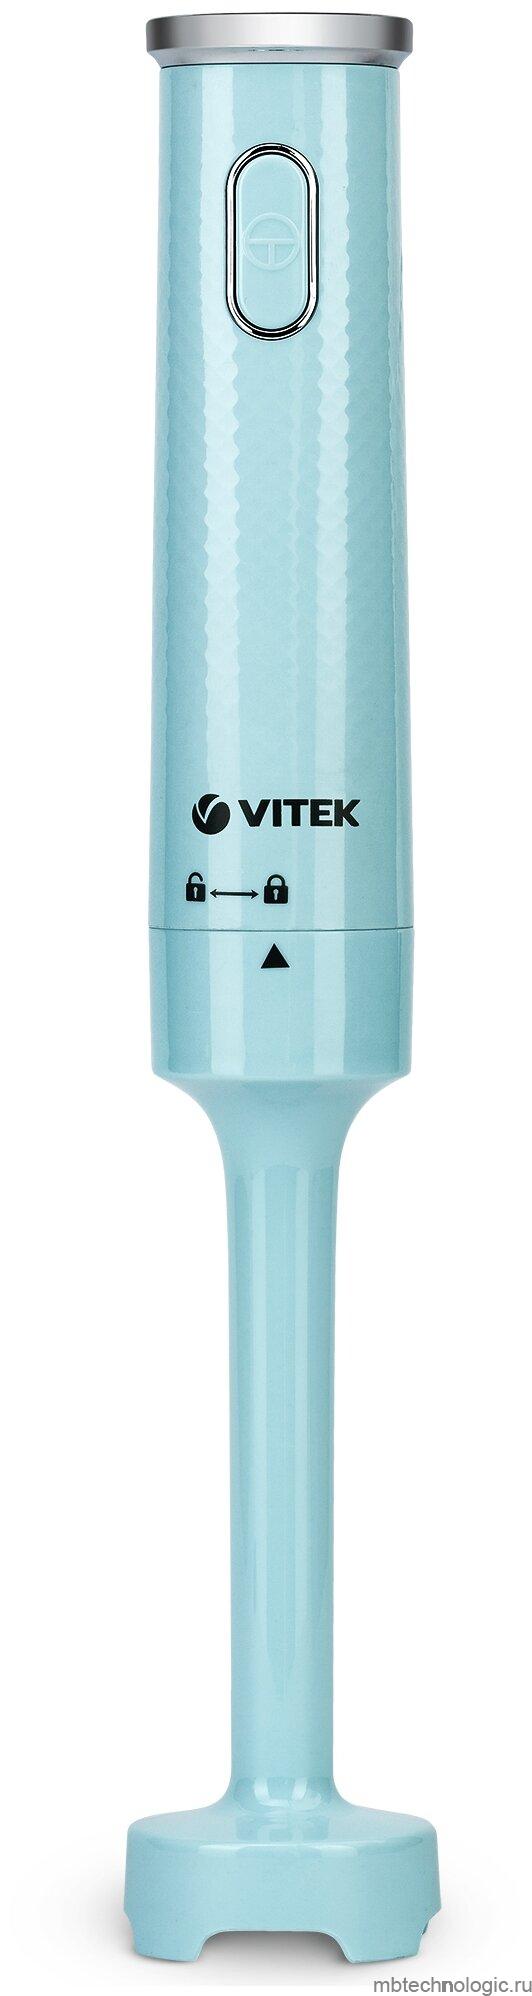 VITEK VT-8500